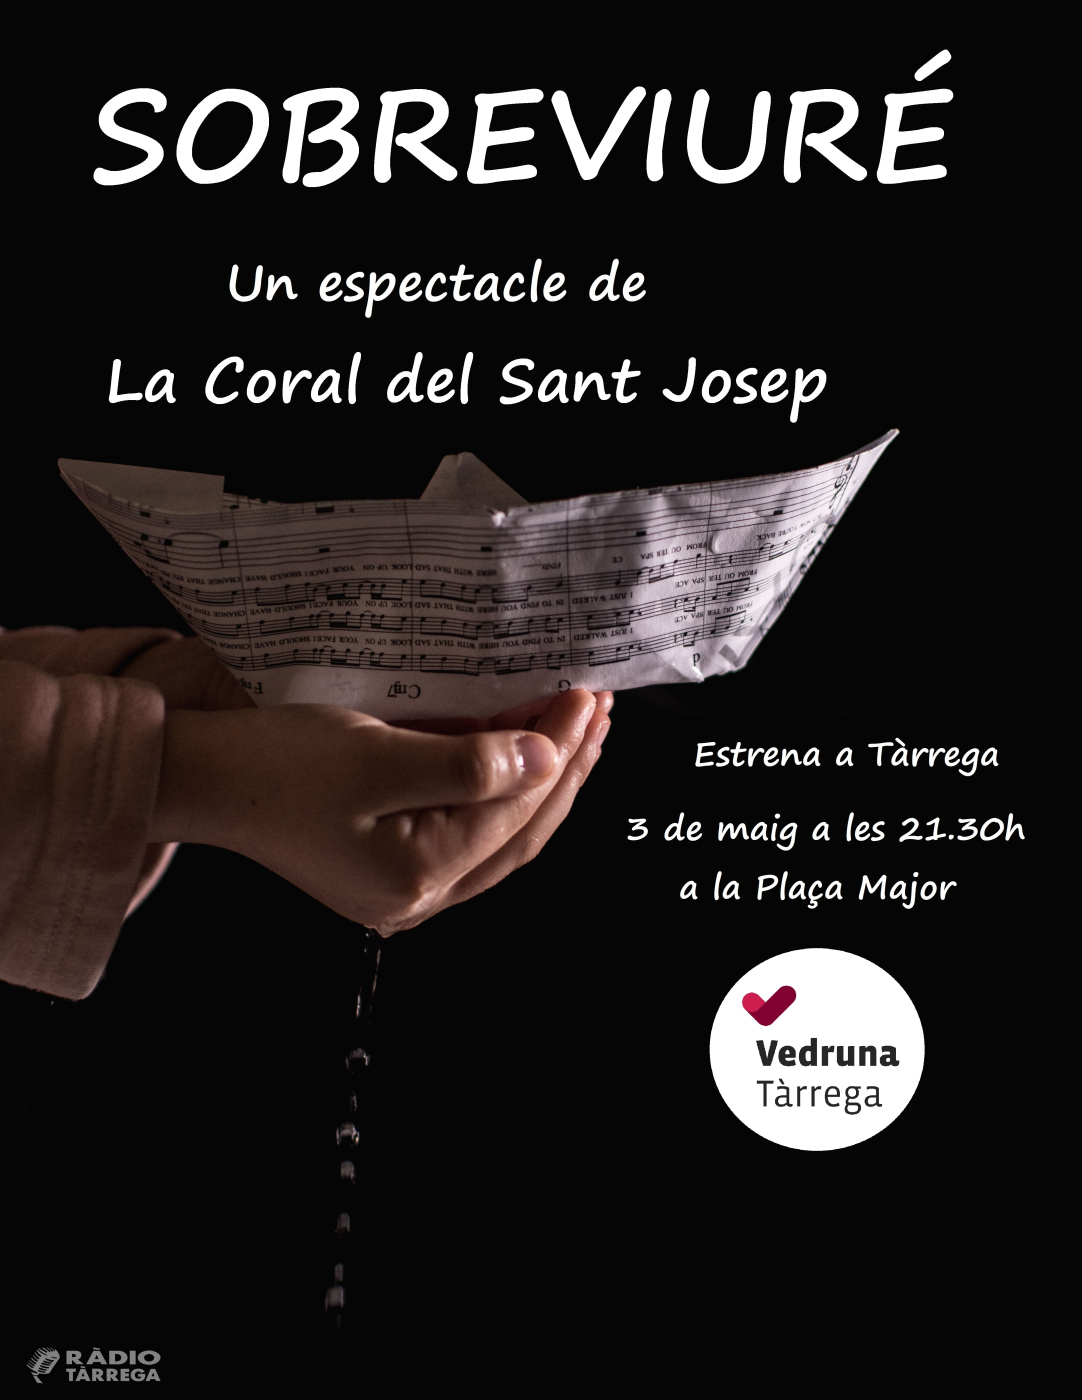 Les corals de l'escola Sant Josep de Tàrrega estrenaran l'espectacle Sobreviuré amb 180 cantants damunt l'escenari